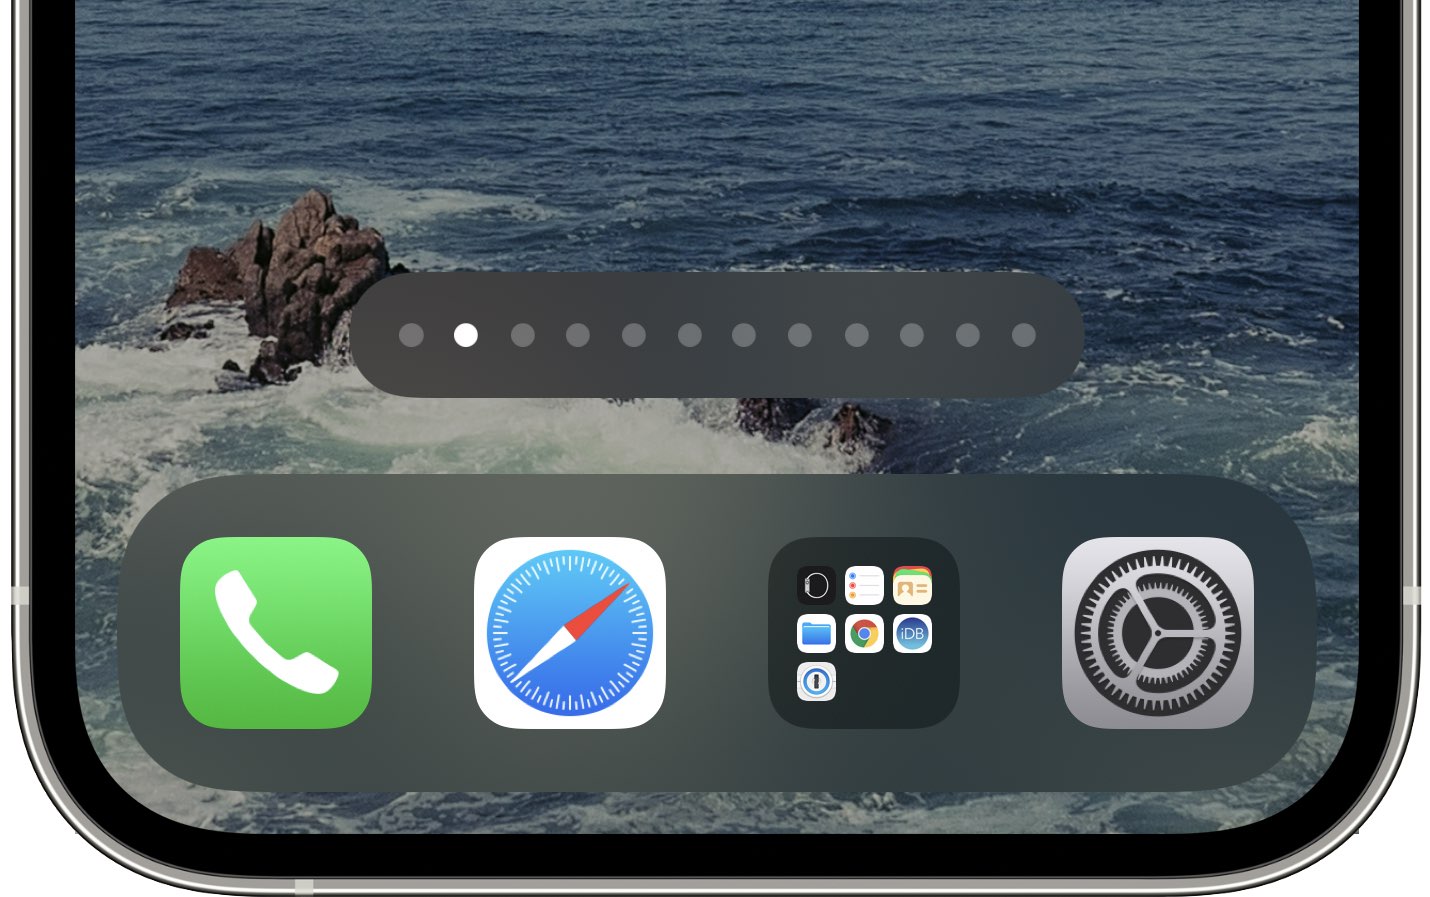 Uno screenshot dell'iPhone che mostra la schermata principale con i punti in basso